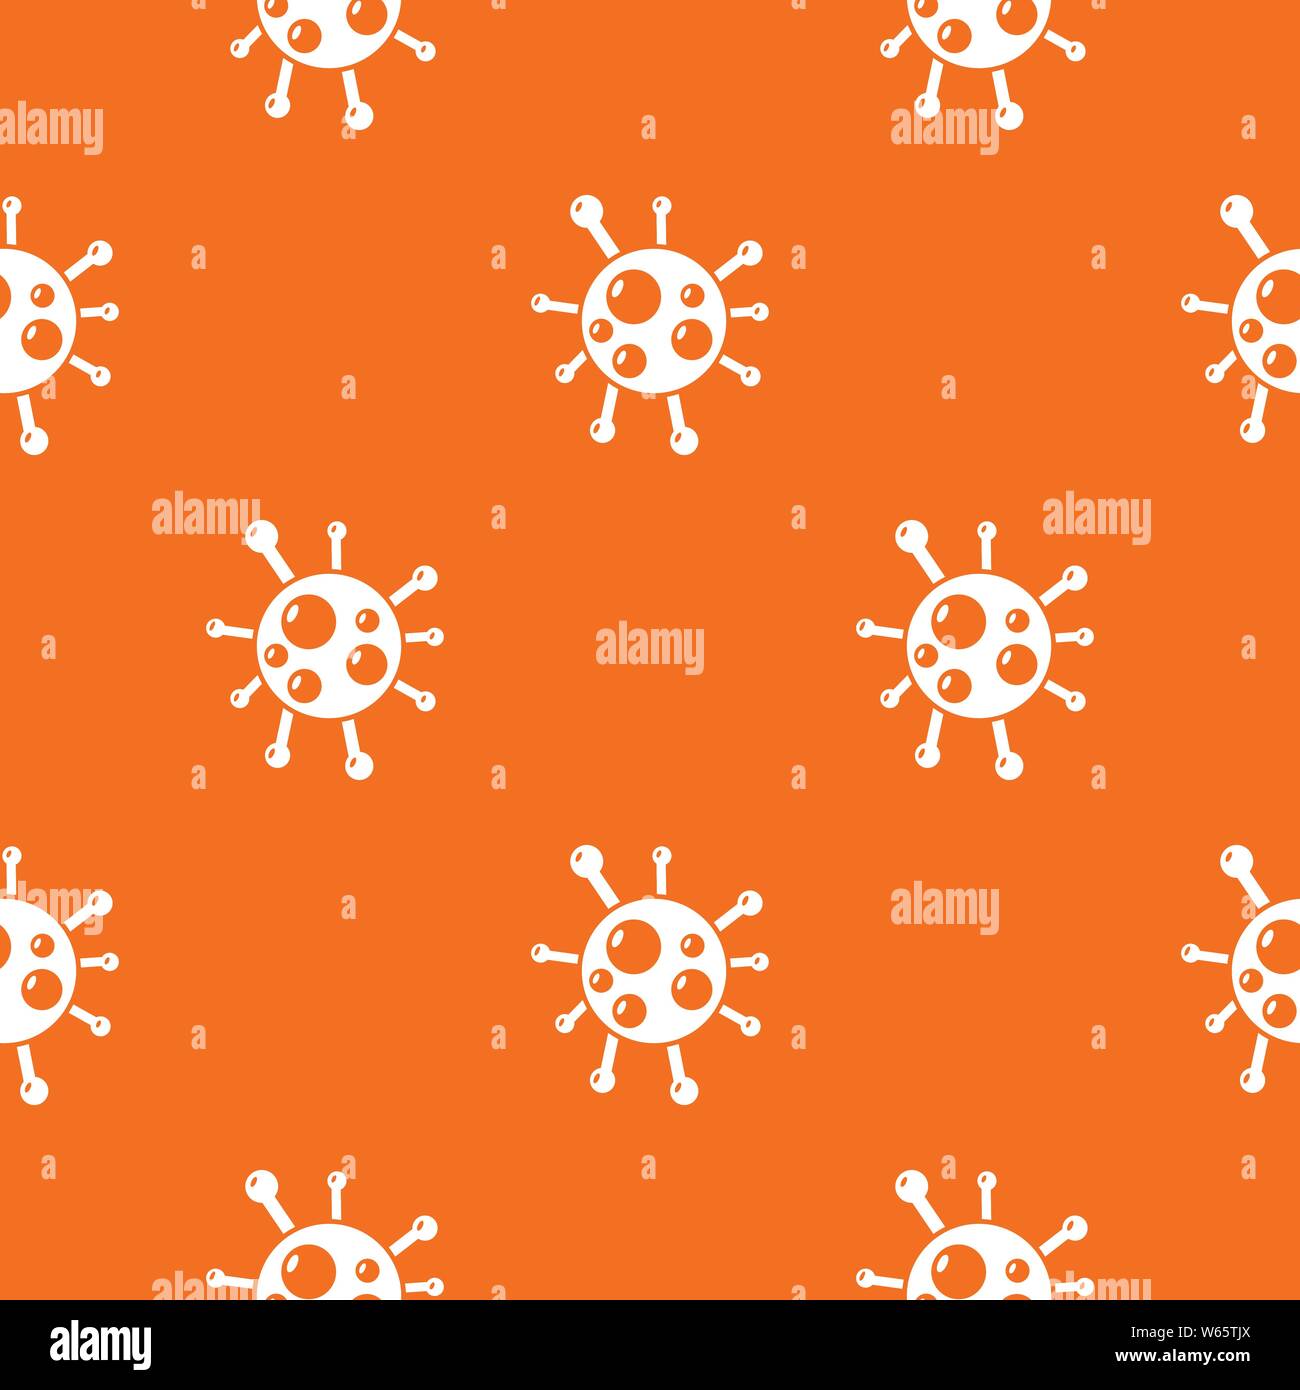 Vecteur de virus Chlamydia orange Illustration de Vecteur